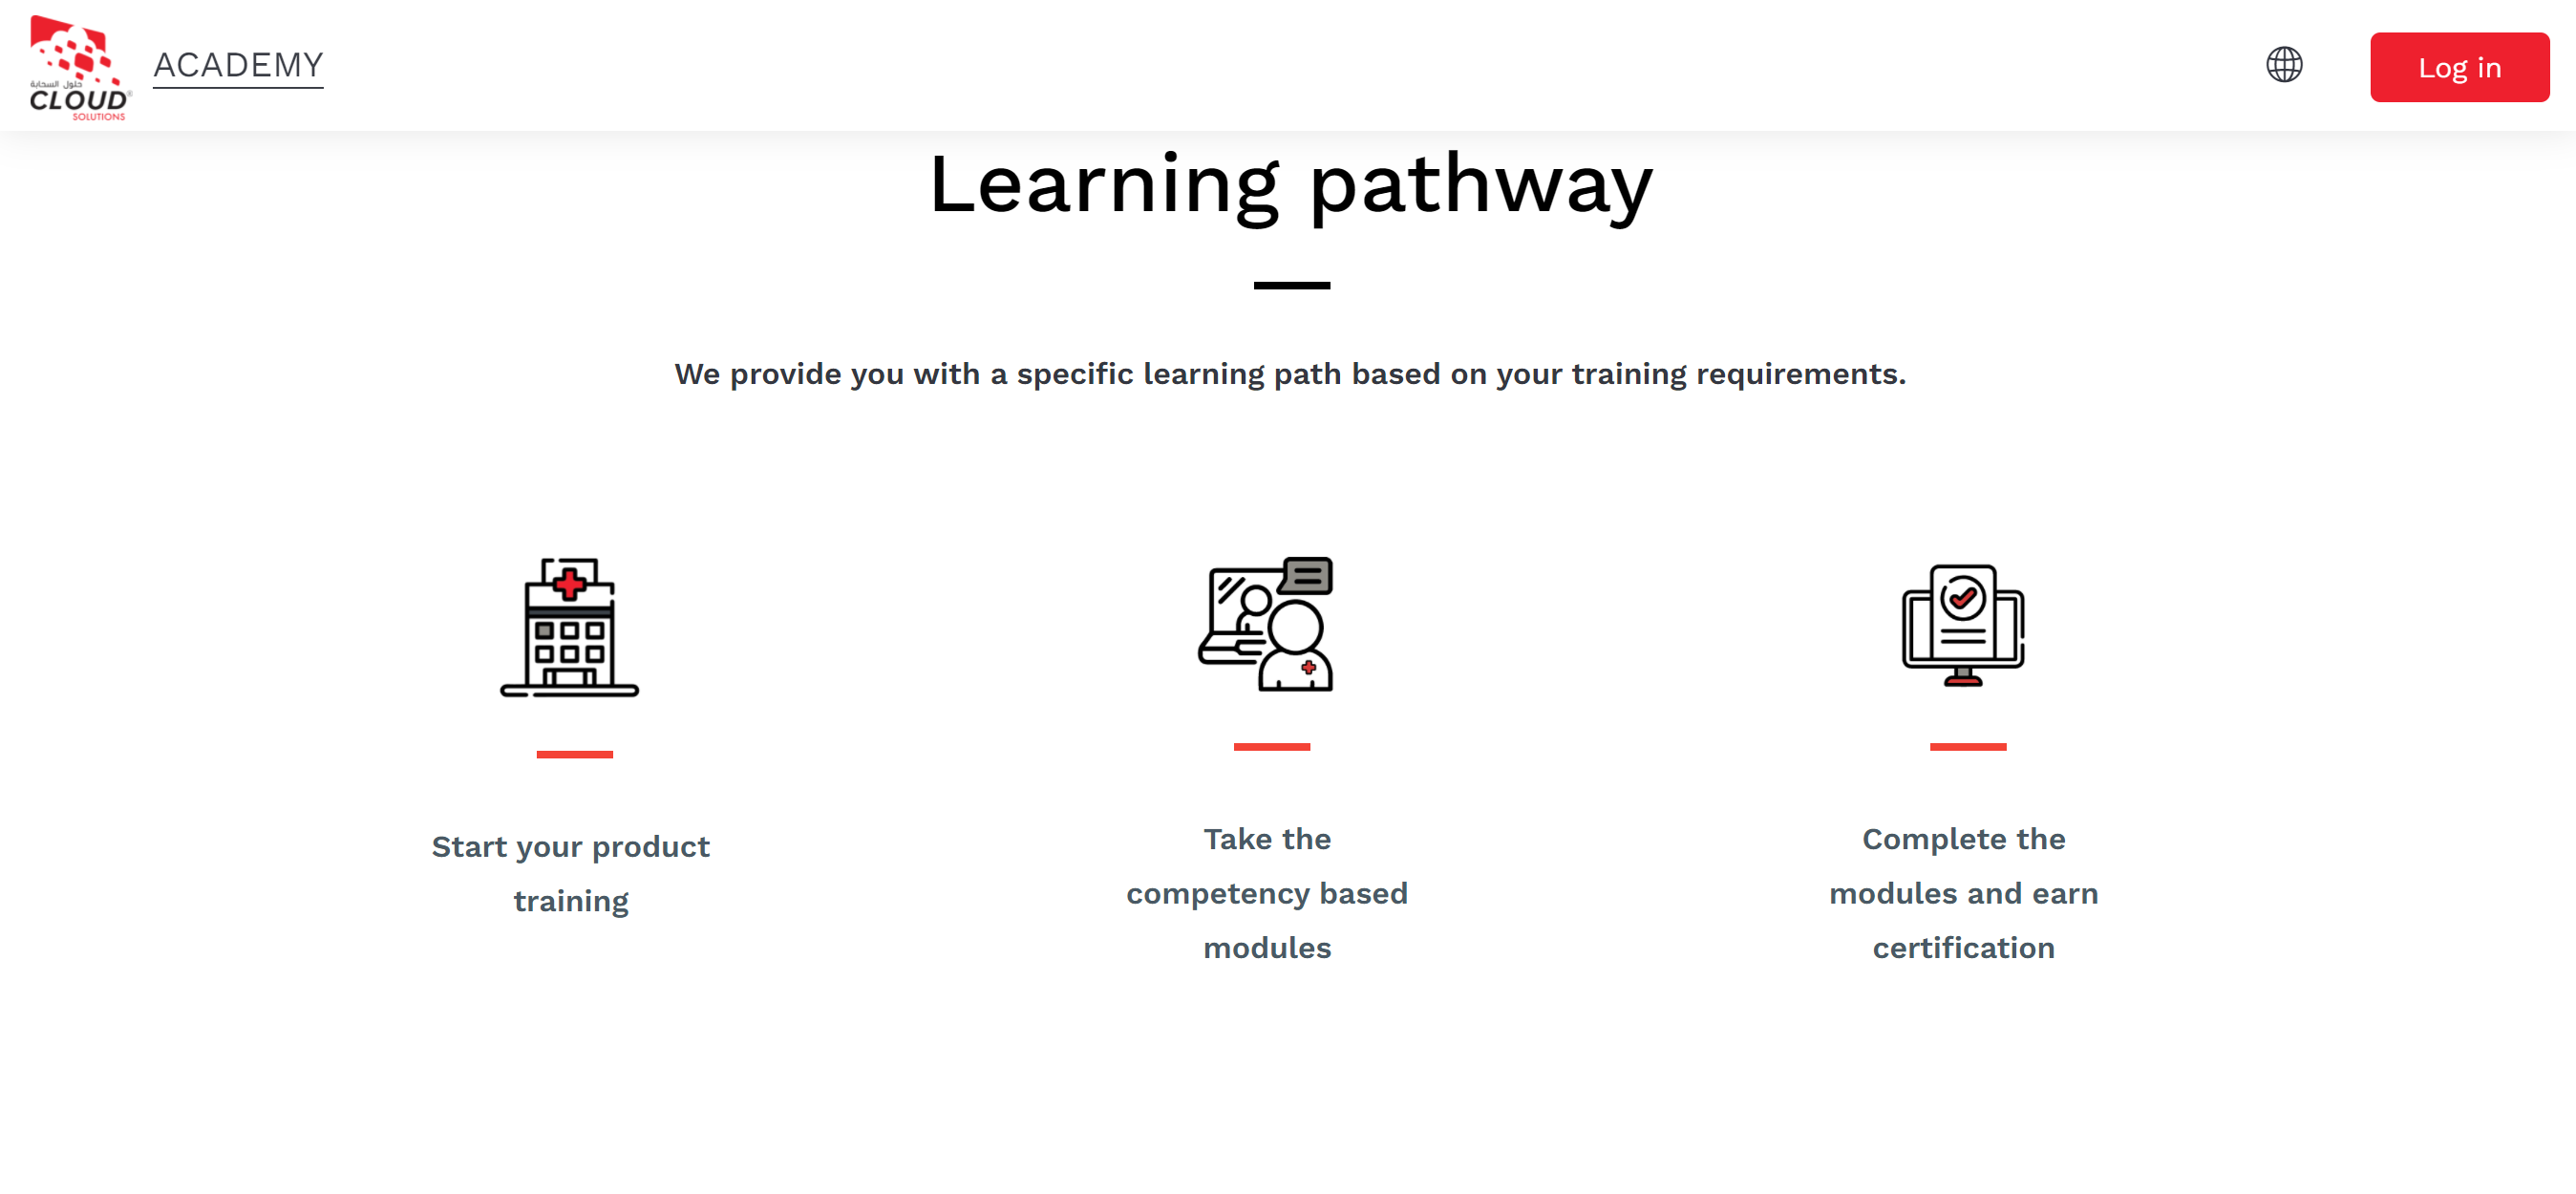 El sitio Moodle de Cloud Solutions Support muestra 3 rutas de aprendizaje disponibles para sus usuarios, según sus requisitos de capacitación: Comience su capacitación sobre el producto; Tome los módulos basados en competencias; Complete los módulos y obtenga la certificación